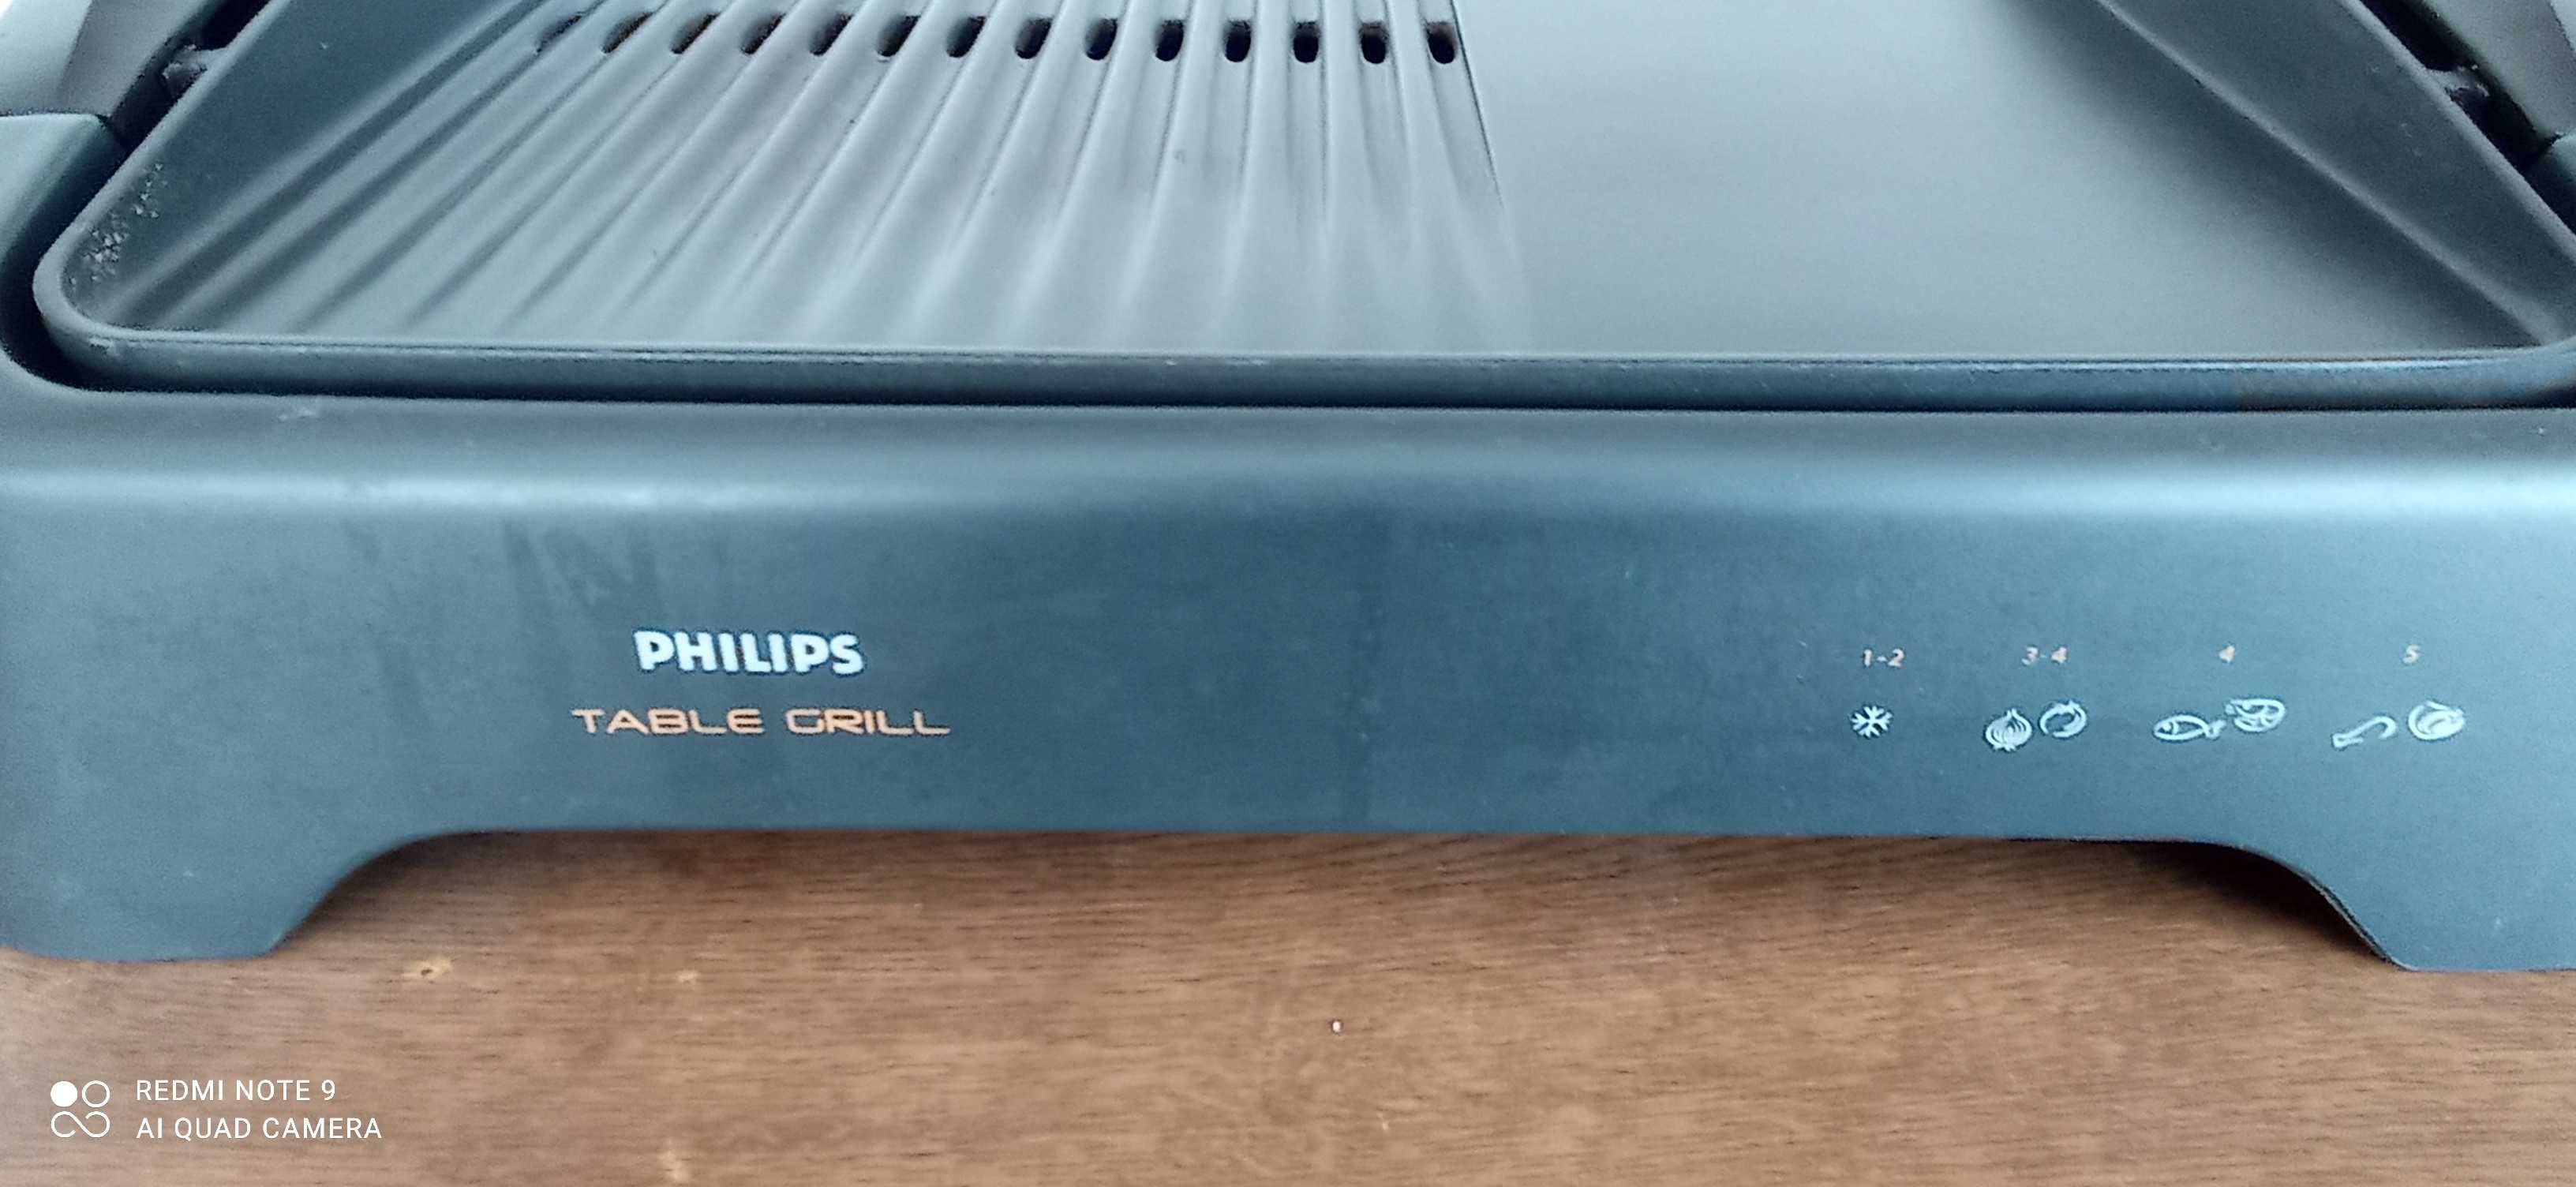 Sprzedam grill elektryczny Philips